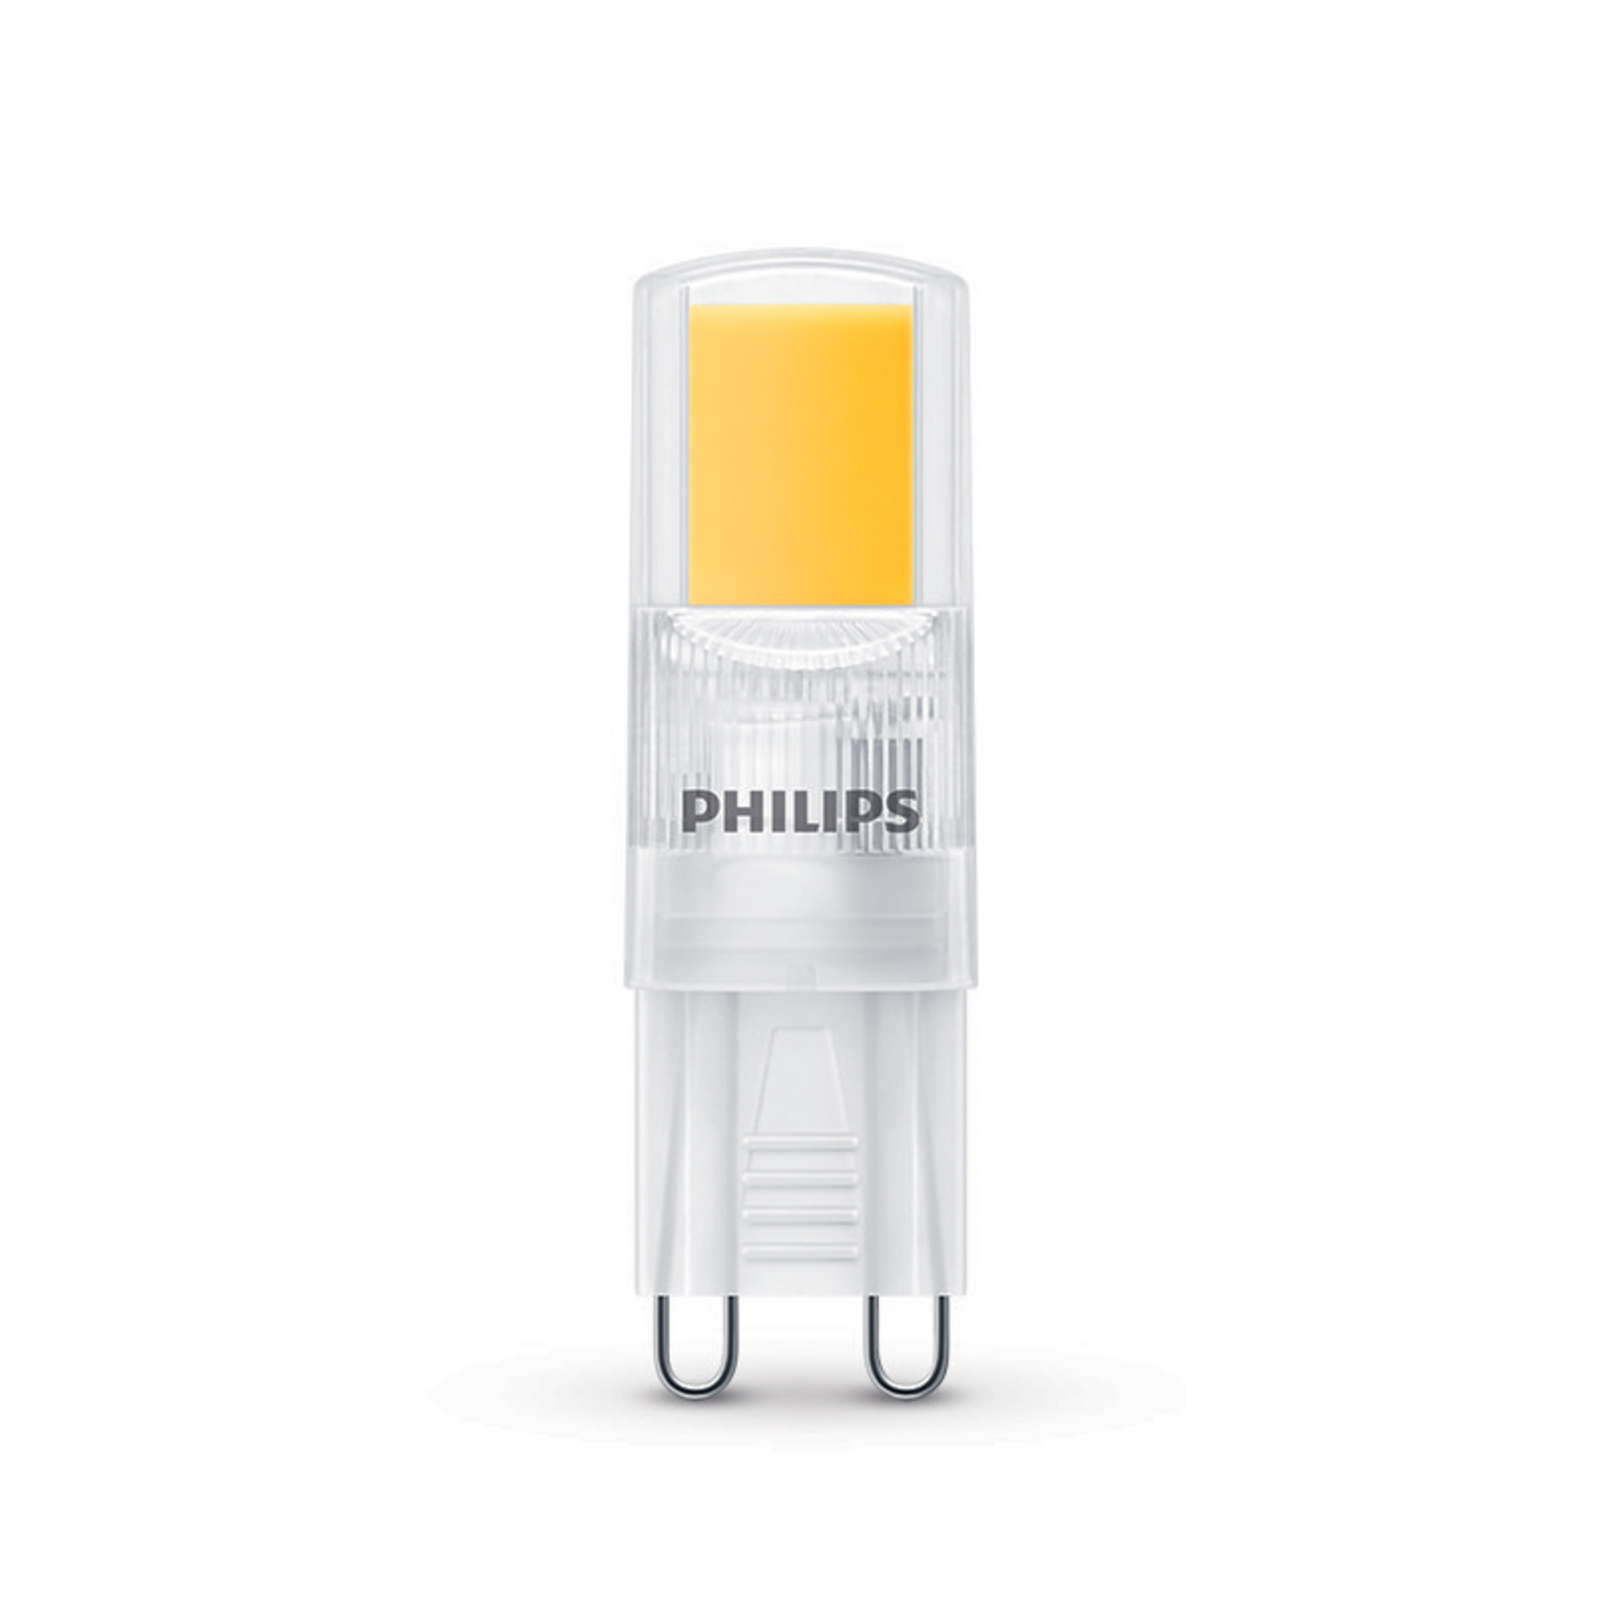 Philips LED lamp G9 2W 220lm 2.700K helder per 3